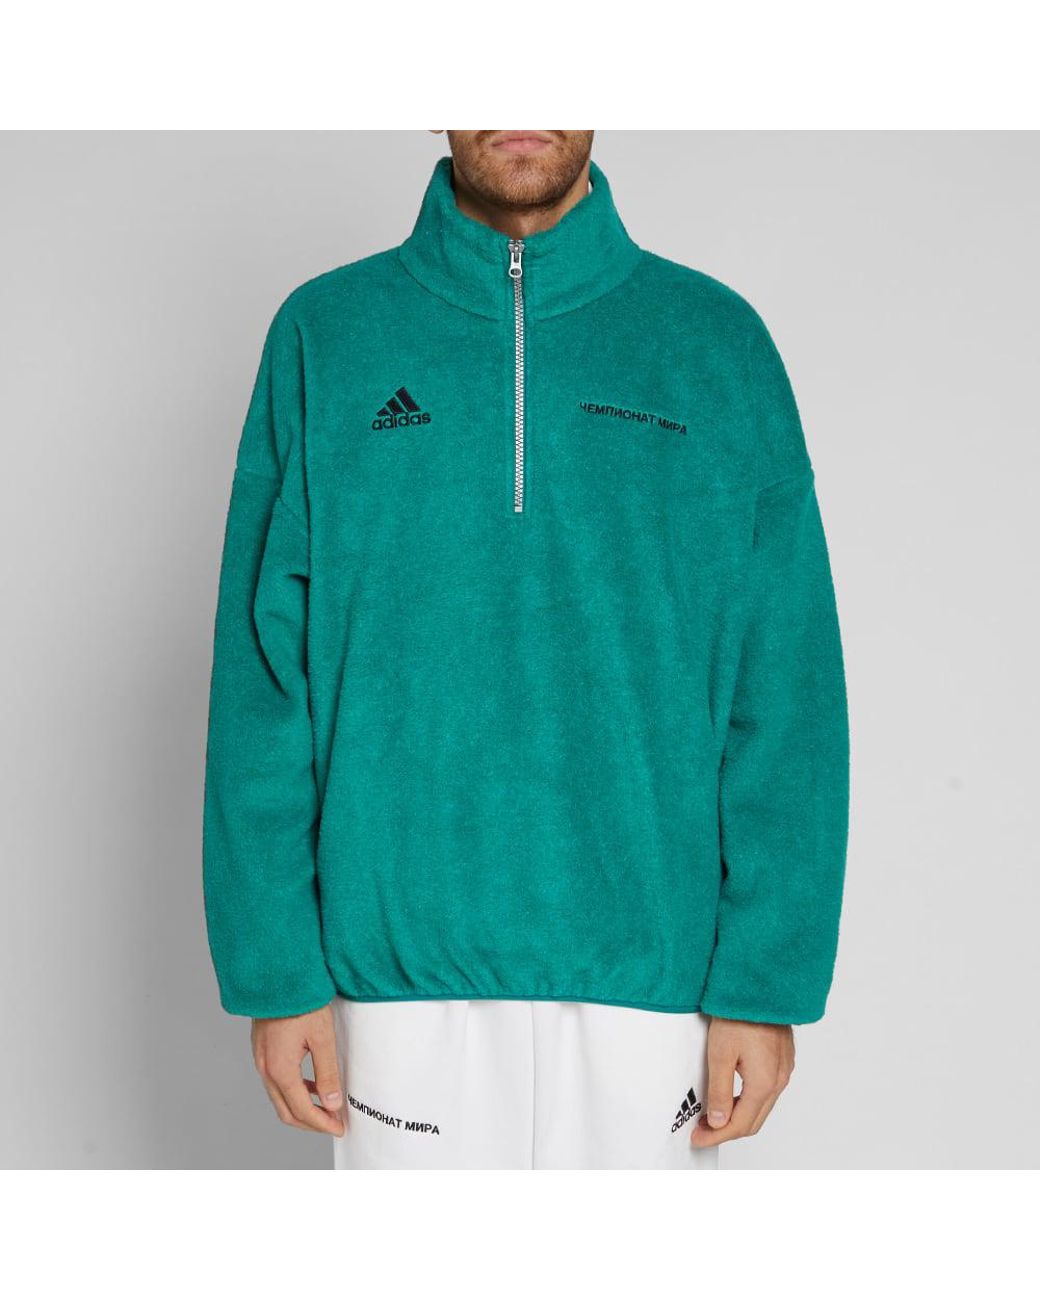 Gosha Rubchinskiy Fleece Adidas X Zipped Jumper in Green for Men | Lyst  Canada